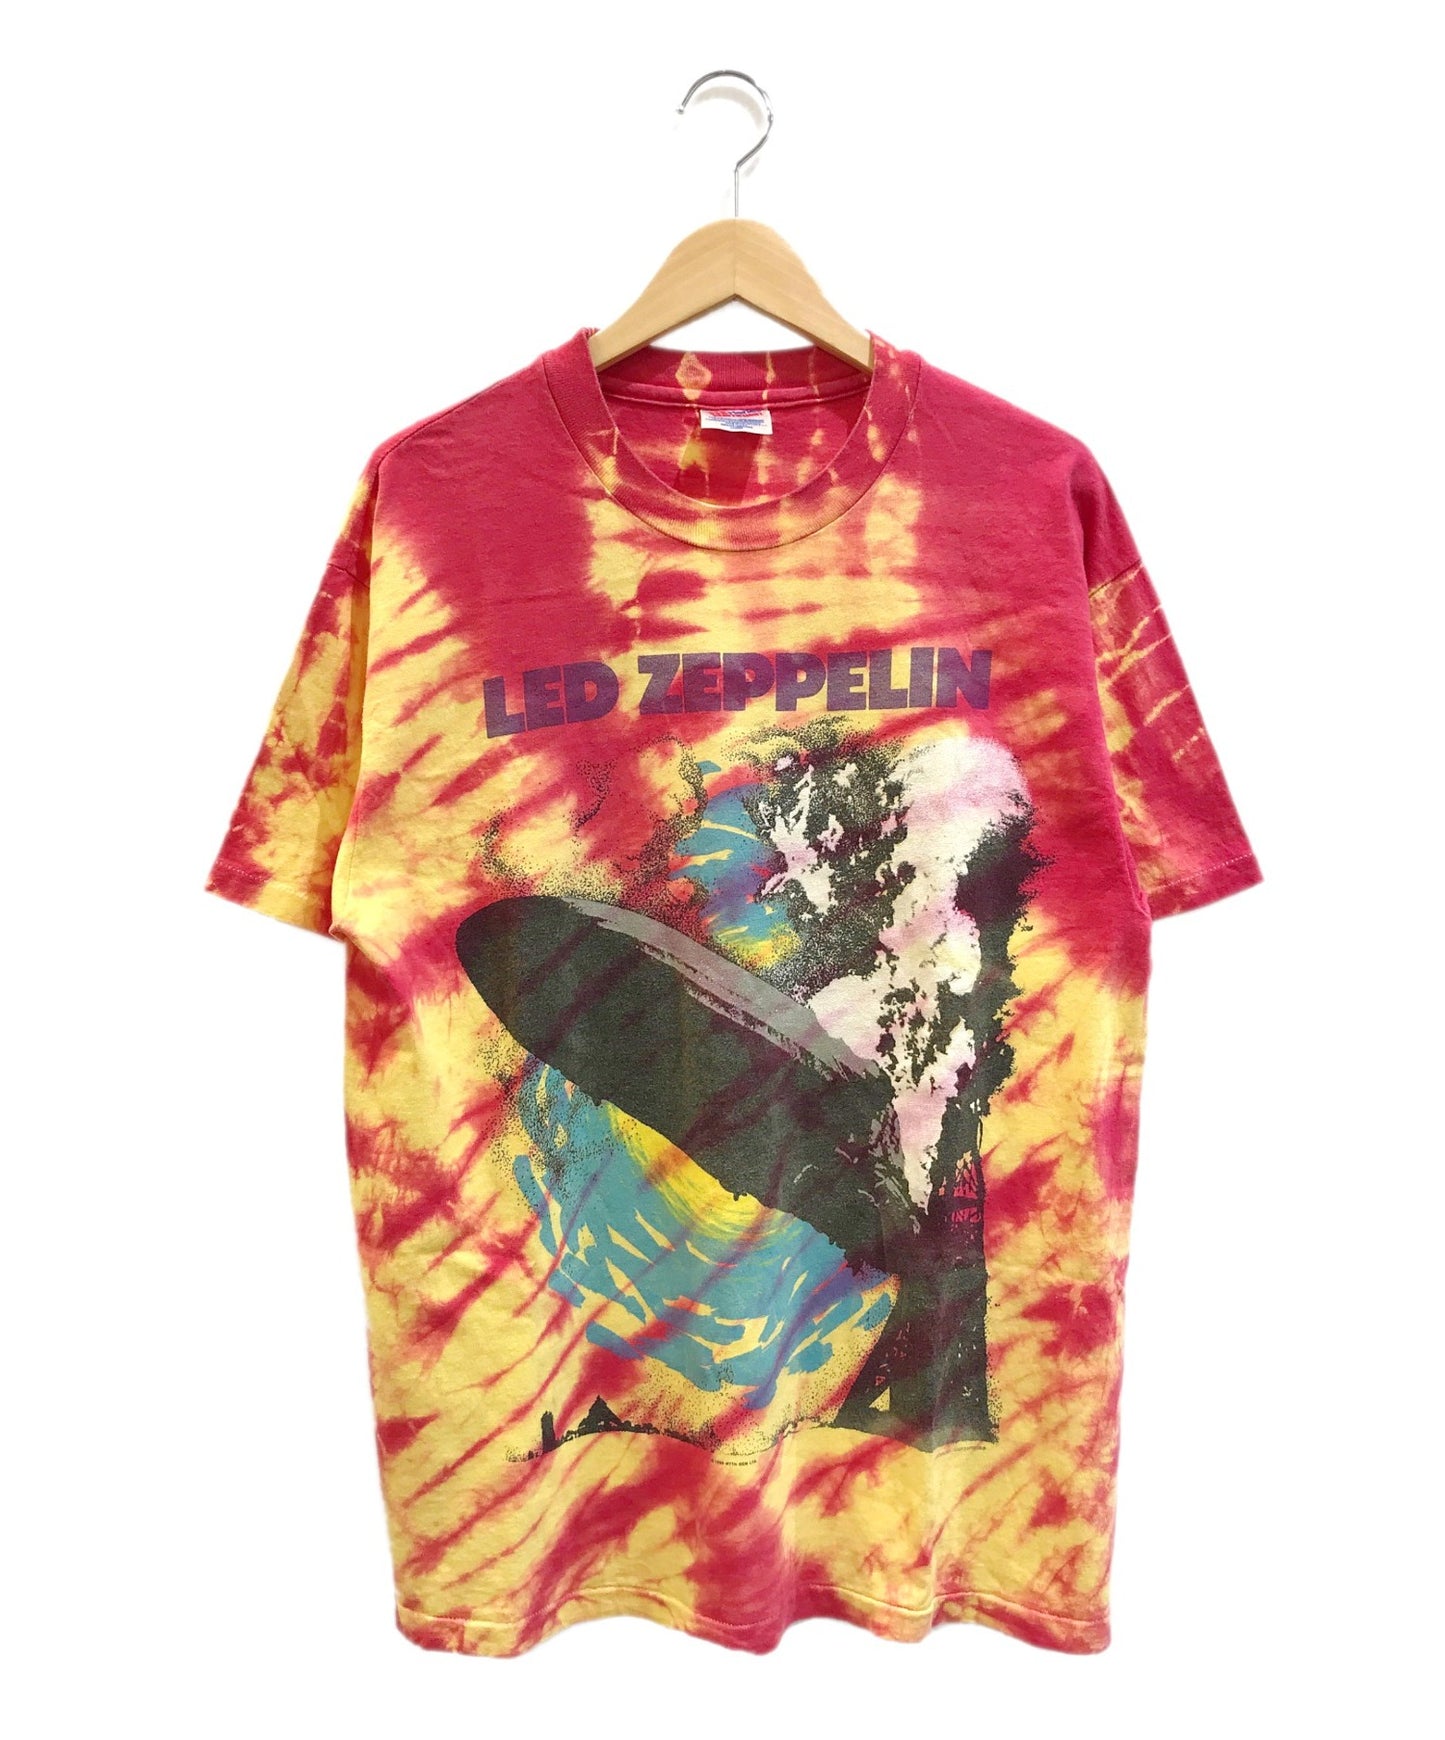 [เสื้อผ้าวินเทจ] เสื้อยืด Led Zeppelin Band 90's